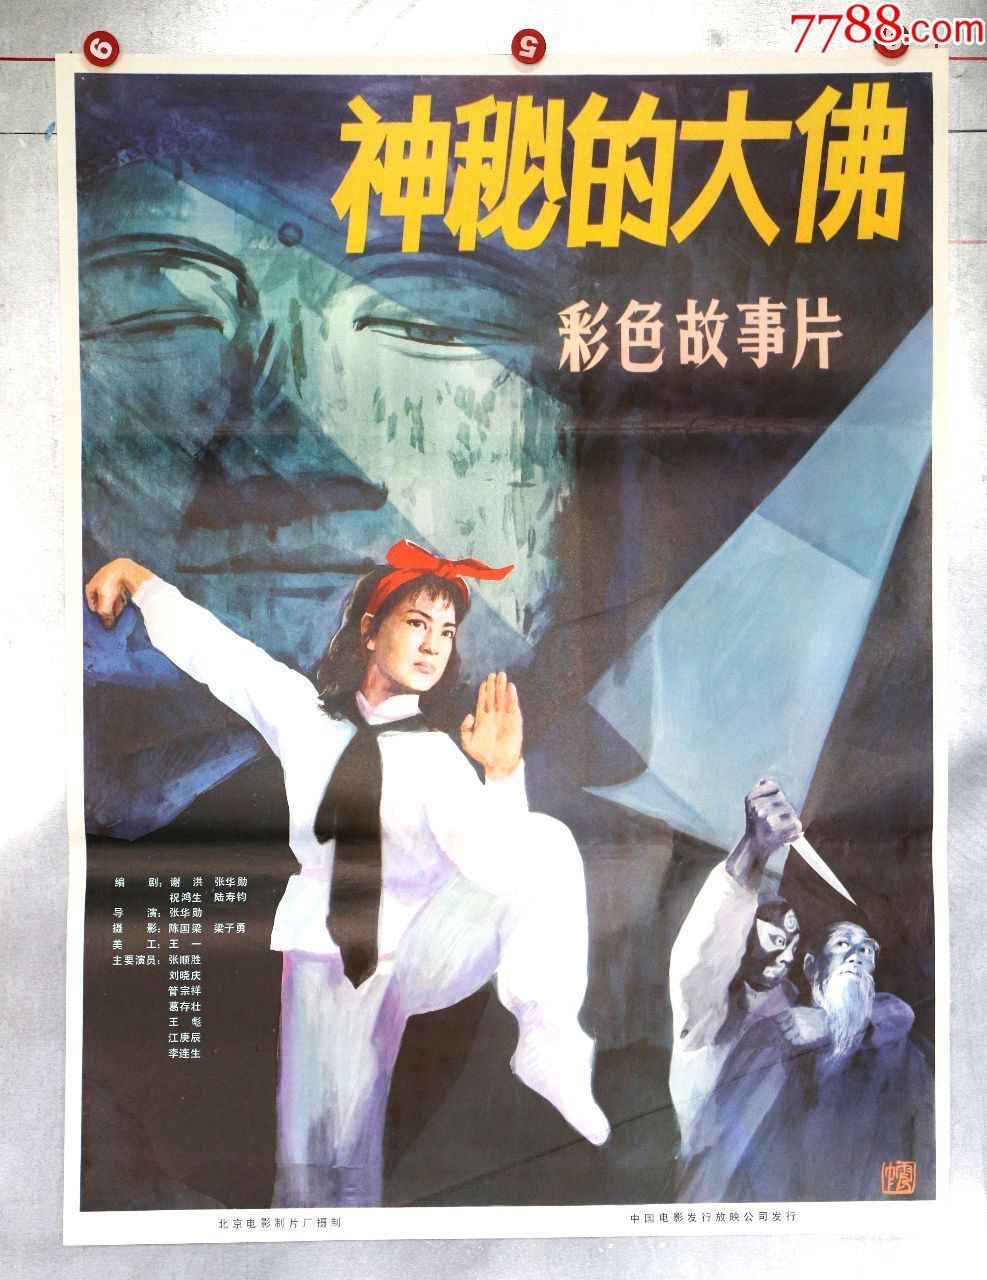 神秘的大佛(刘晓庆)_电影海报_电影海报收藏工作室